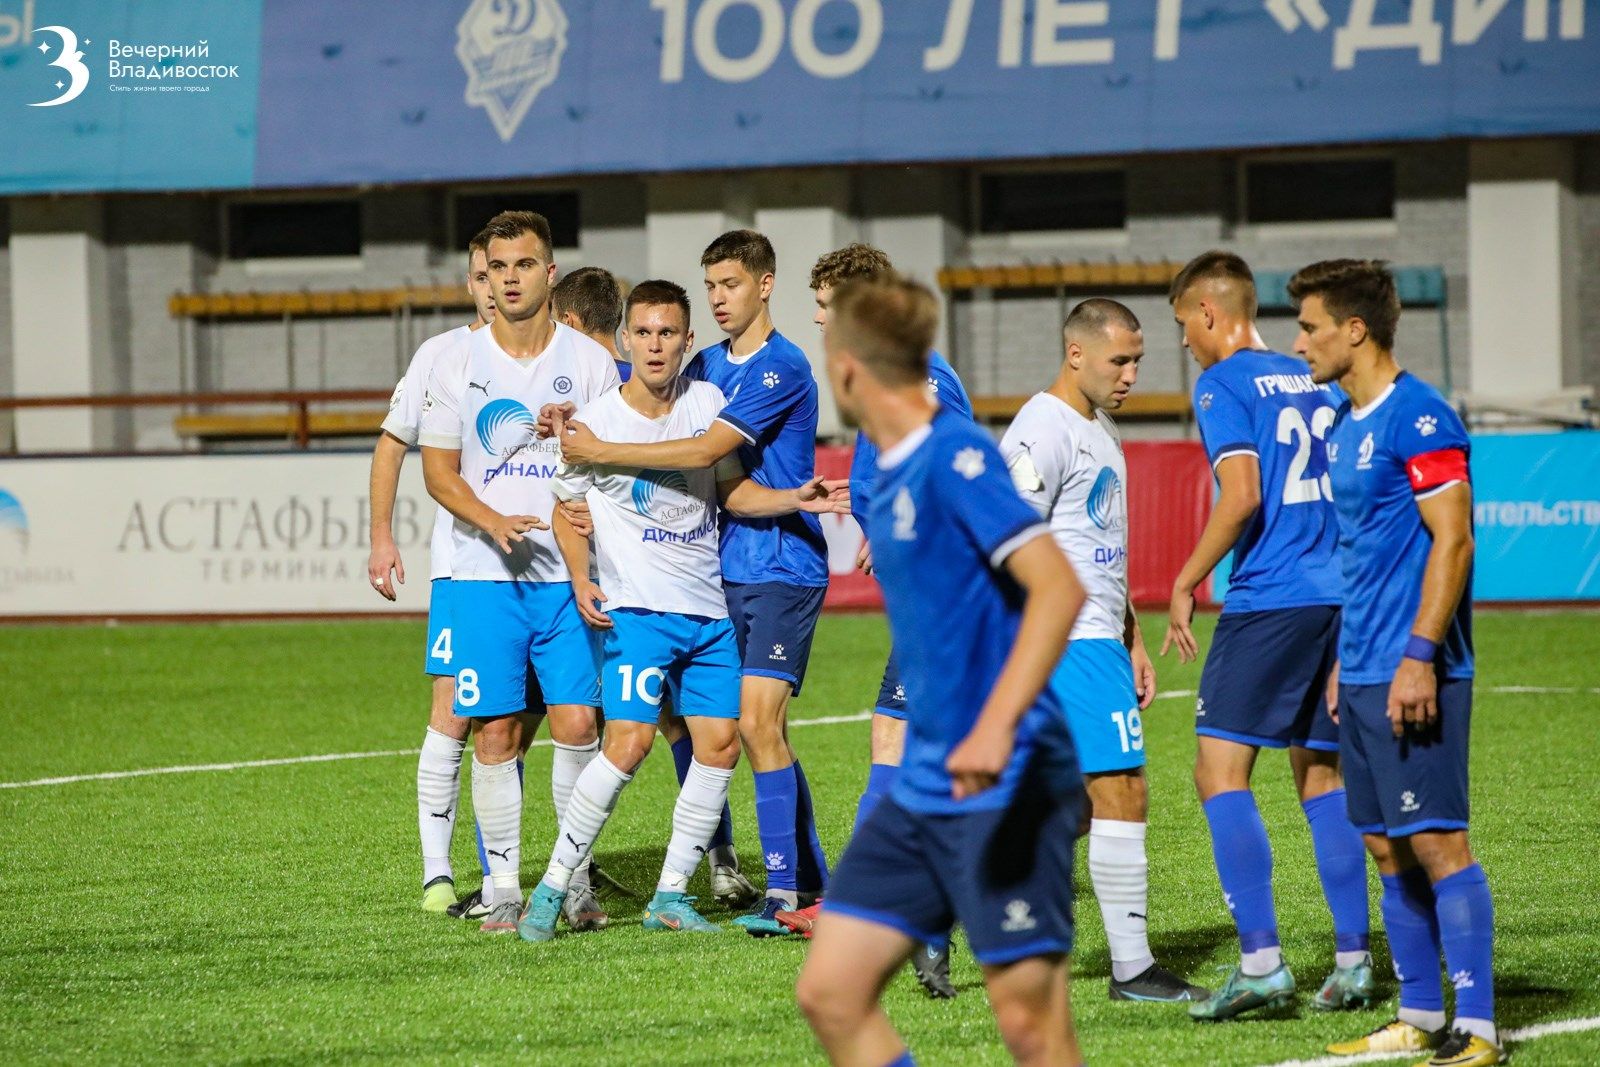 Futbol_Kubok_Rossii_Dinamo_Vladivostok_Barnaul-21-thumbnail-2560x2560-80